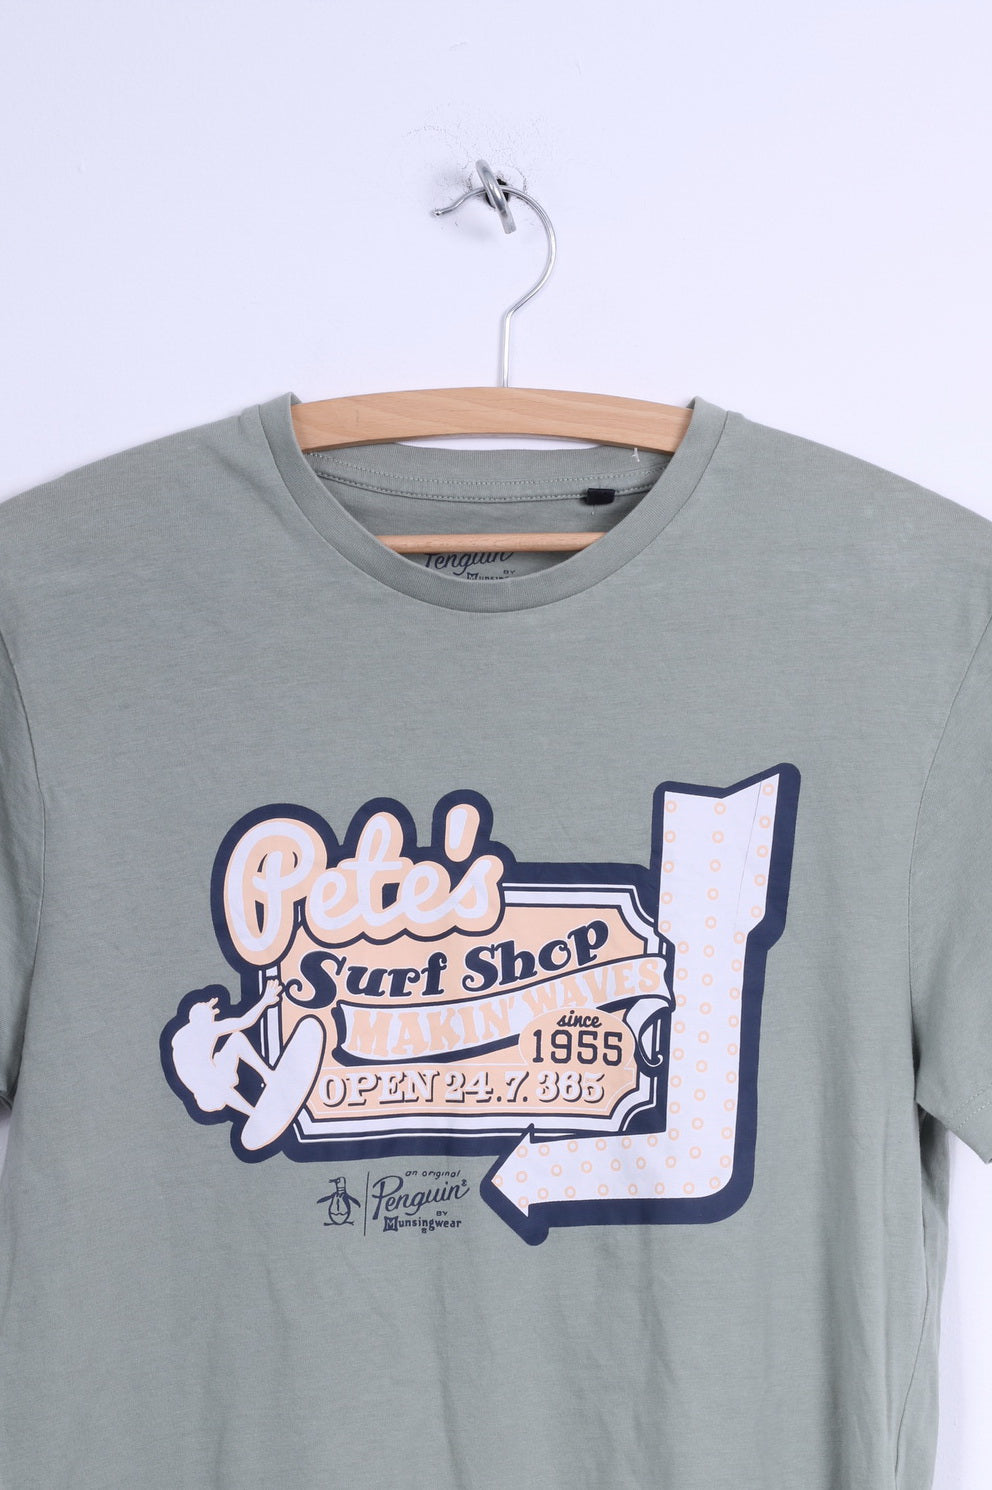 Penguin Mens S T-Shirt Khaki Cotton Crew Neck Graphic Shirt Pete's Surf Shop